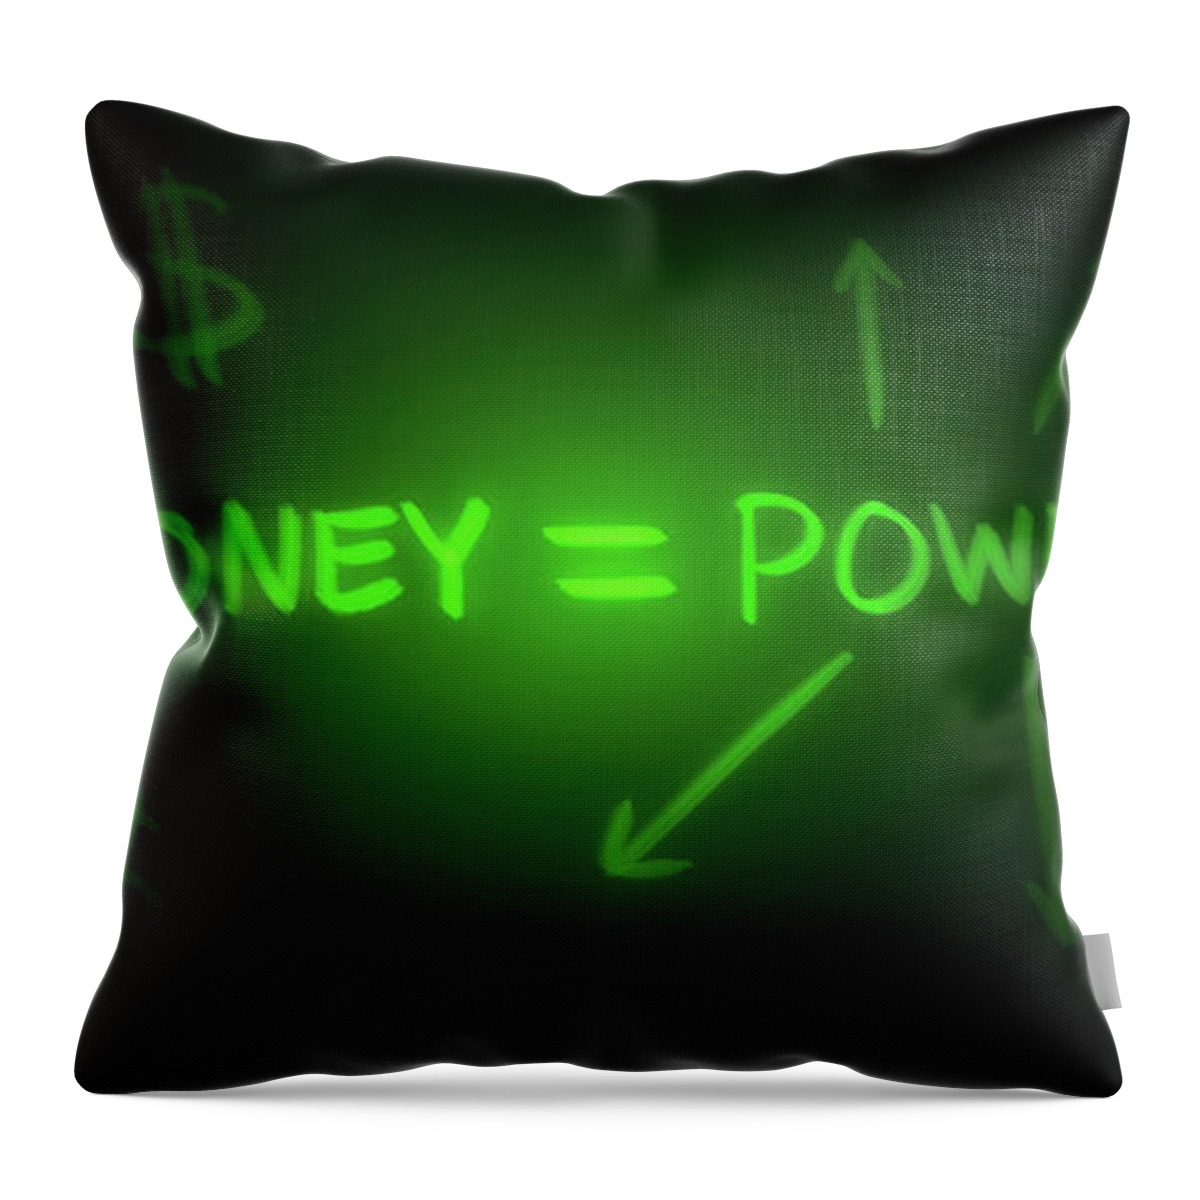 Green Throw Pillow featuring the digital art Art - Money Equals Power by Matthias Zegveld